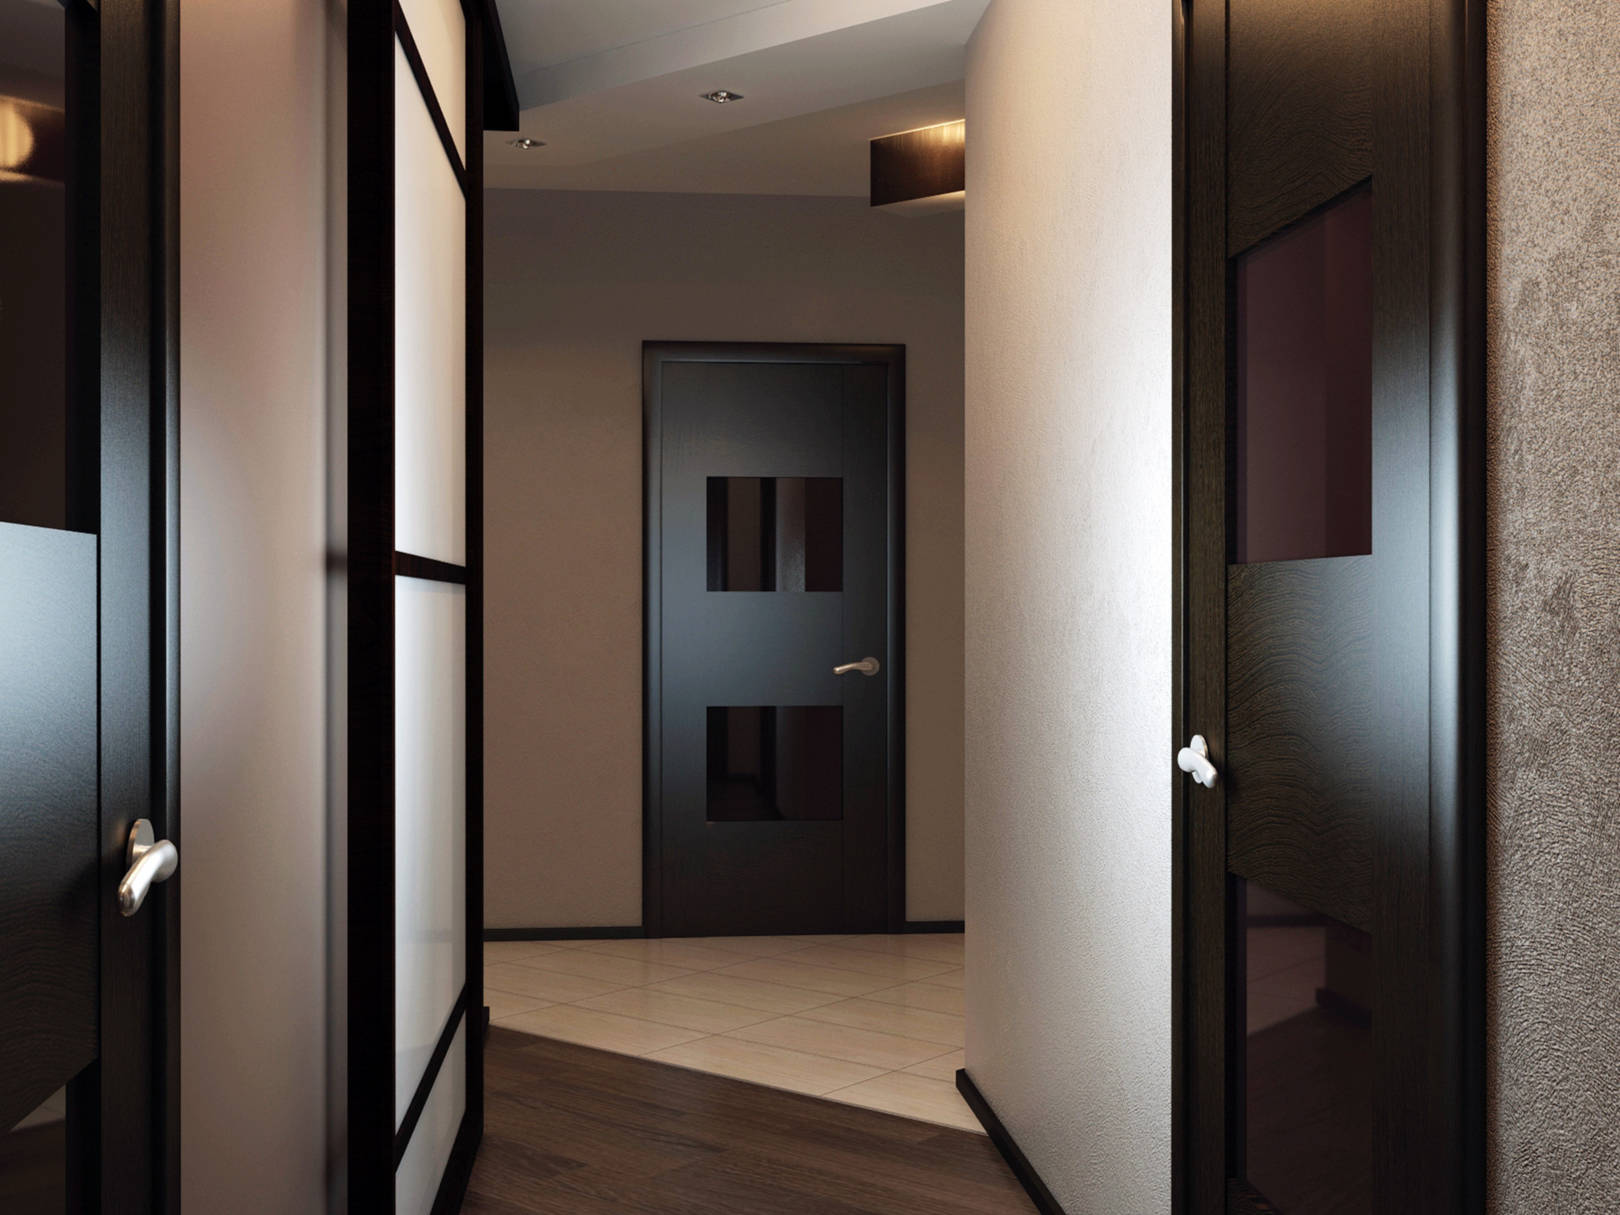 Дизайн квартиры с дверями. Темные двери в интерьере. Коридор с дверями венге. Двери венге в интерьере. Интерьер квартиры с темными дверями.